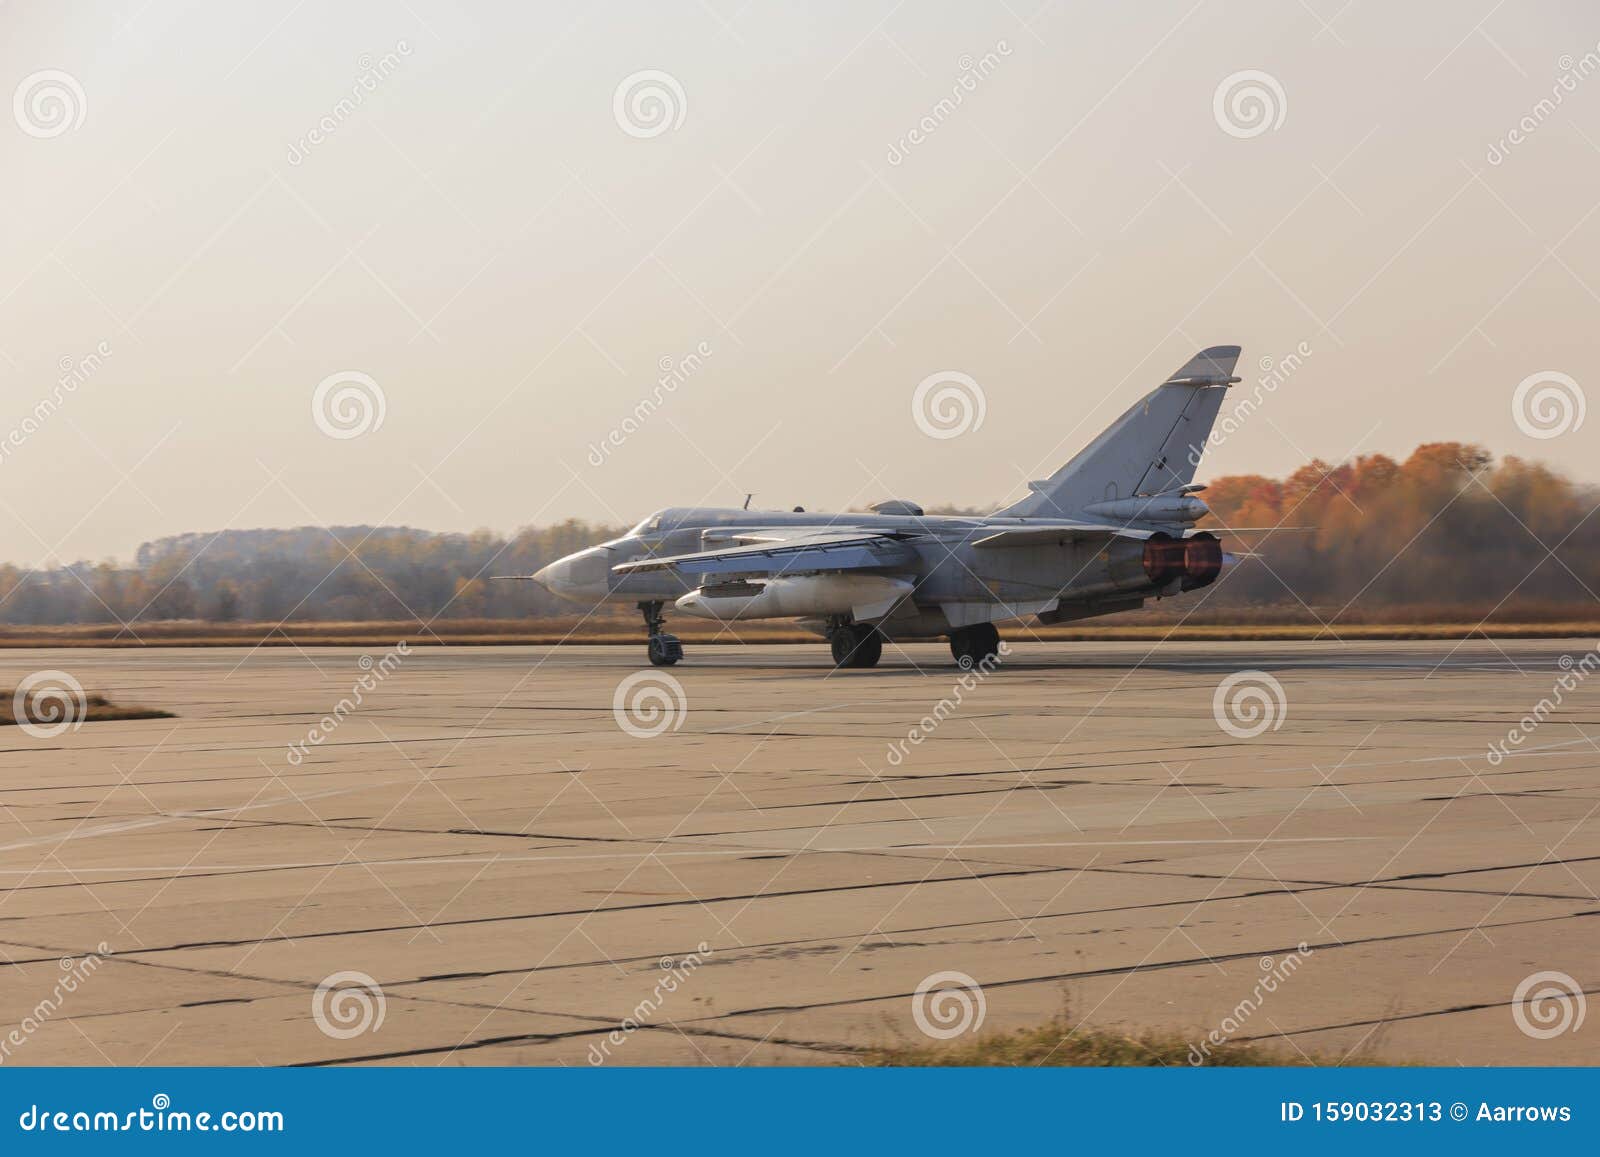 military jet bomber su-24 fencer afterburner takeoff